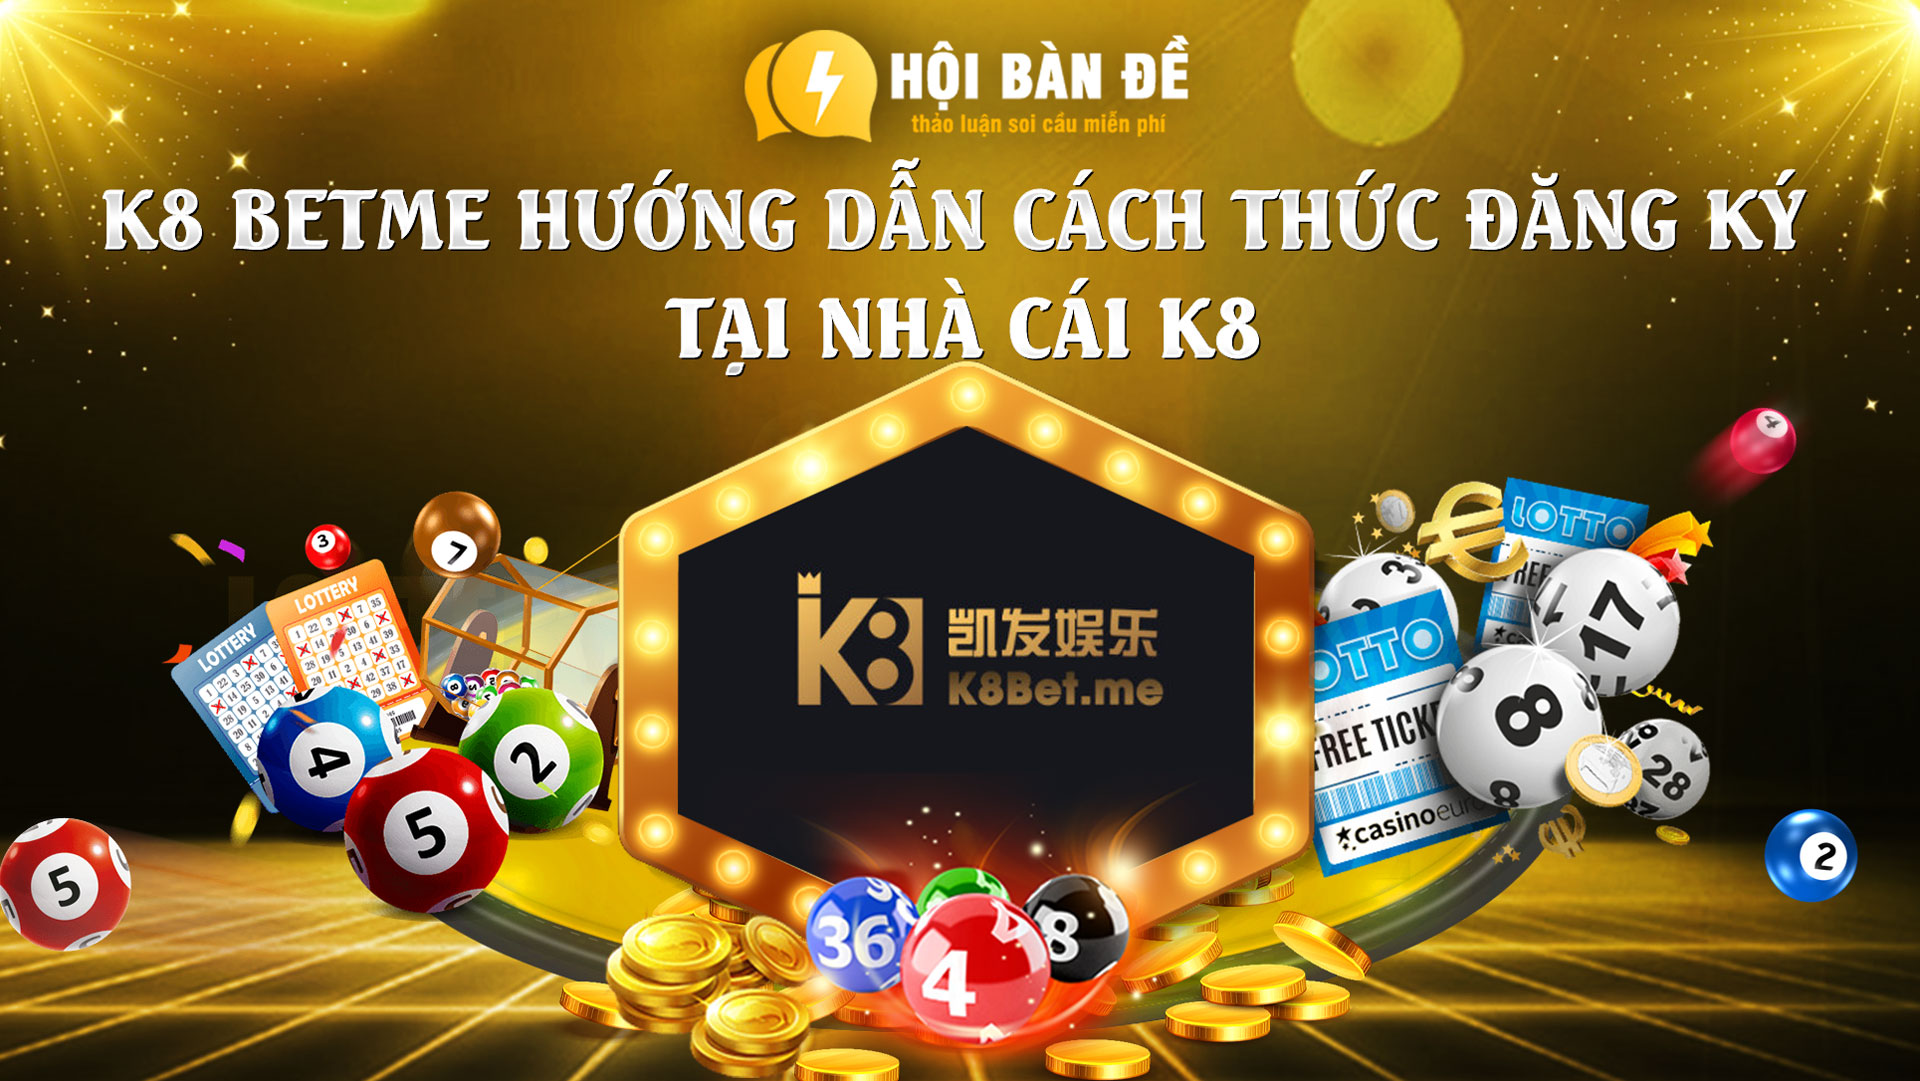 K8 Betme Huong Dan Cach Thuc Dang Ky Tai Nha Cai K8 (2)